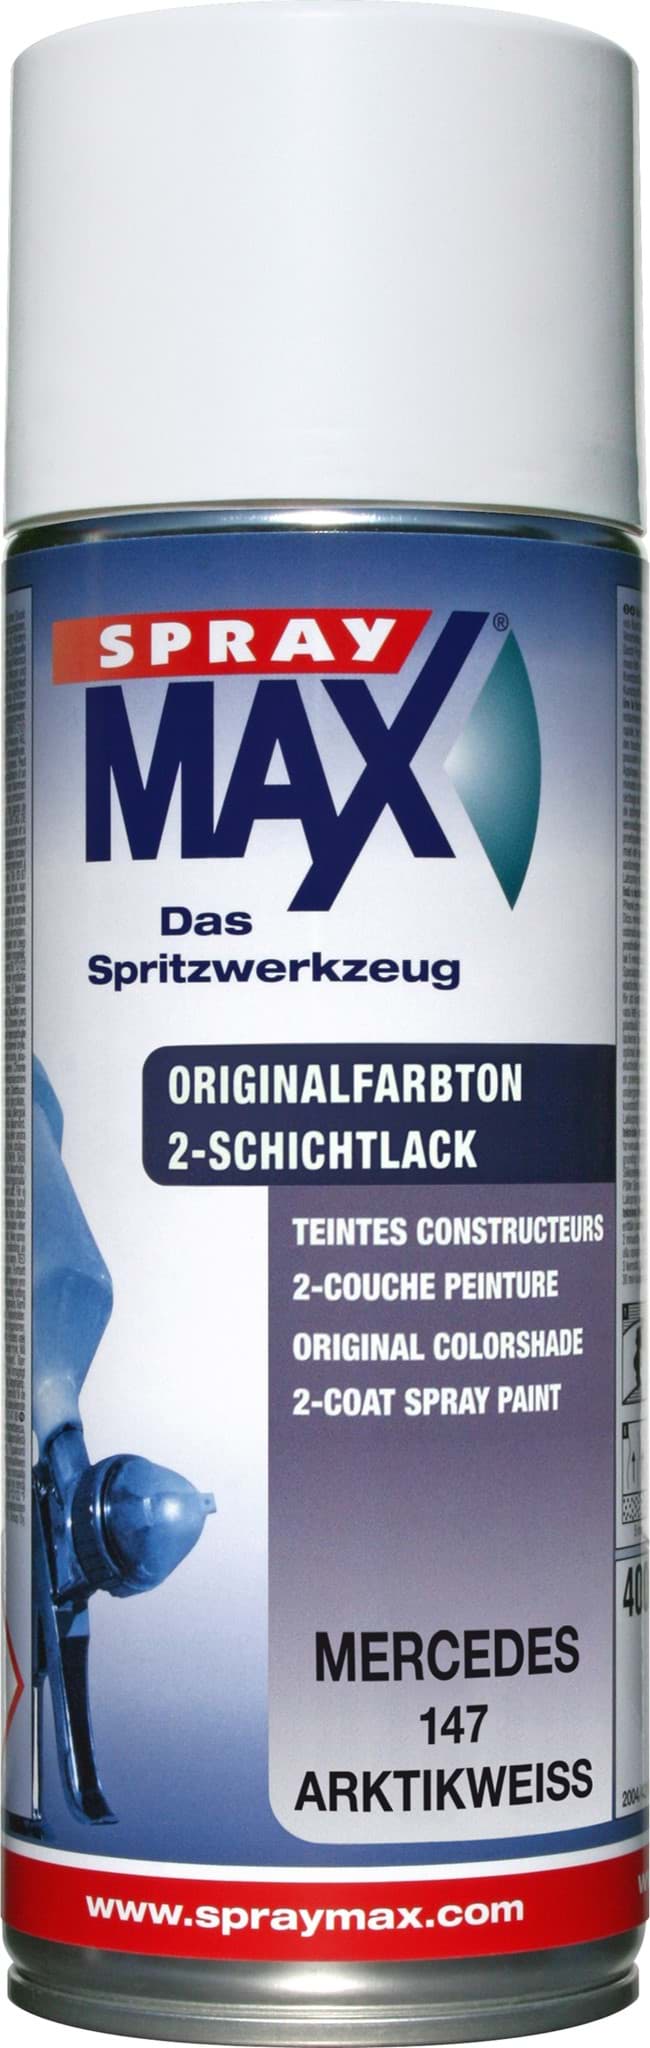 Afbeelding van SprayMax Originalfarbton für Mercedes 147 arktikweiss